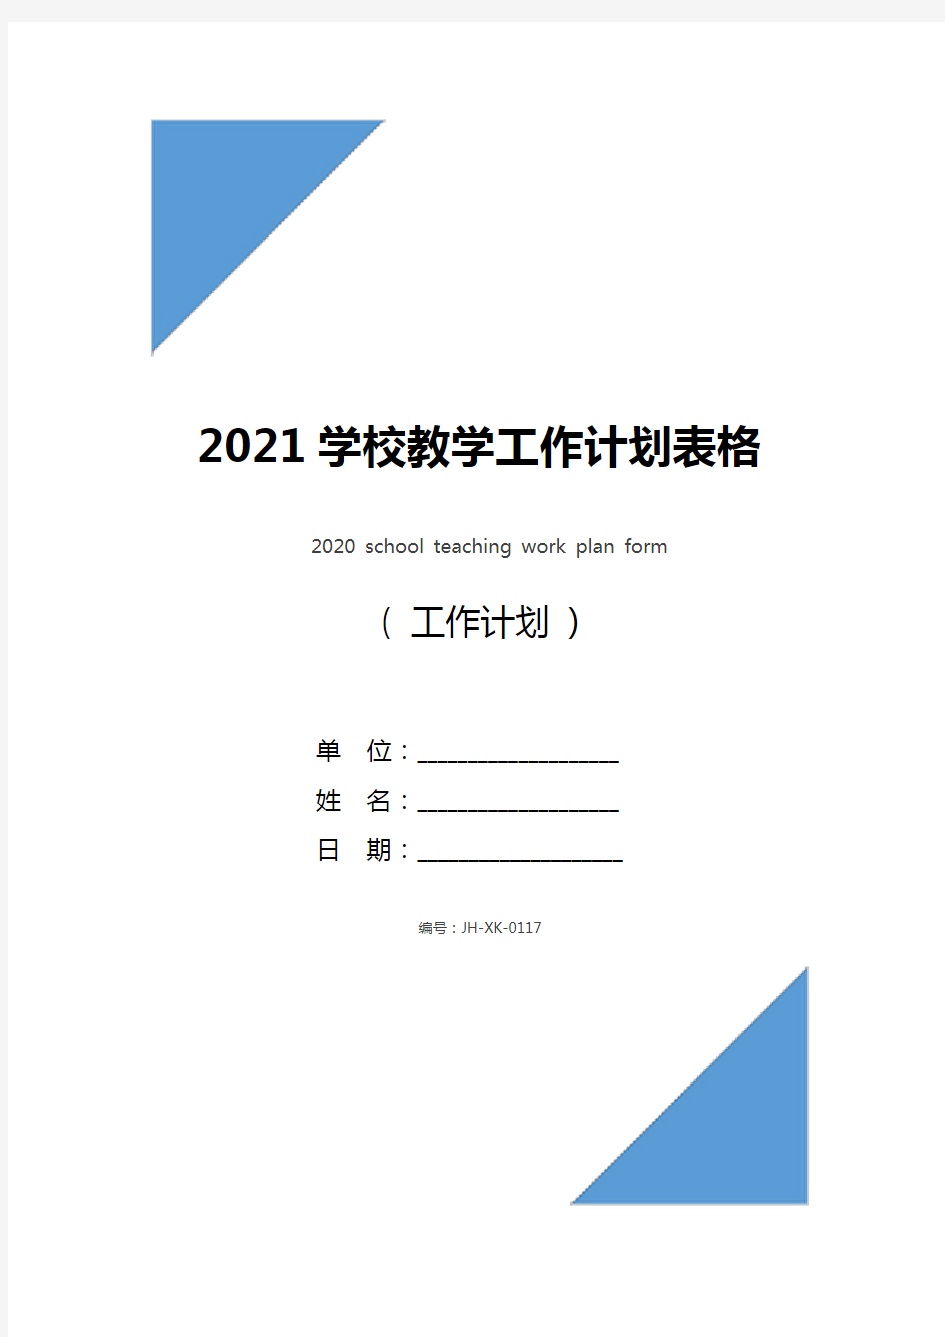 2021学校教学工作计划表格(新版)